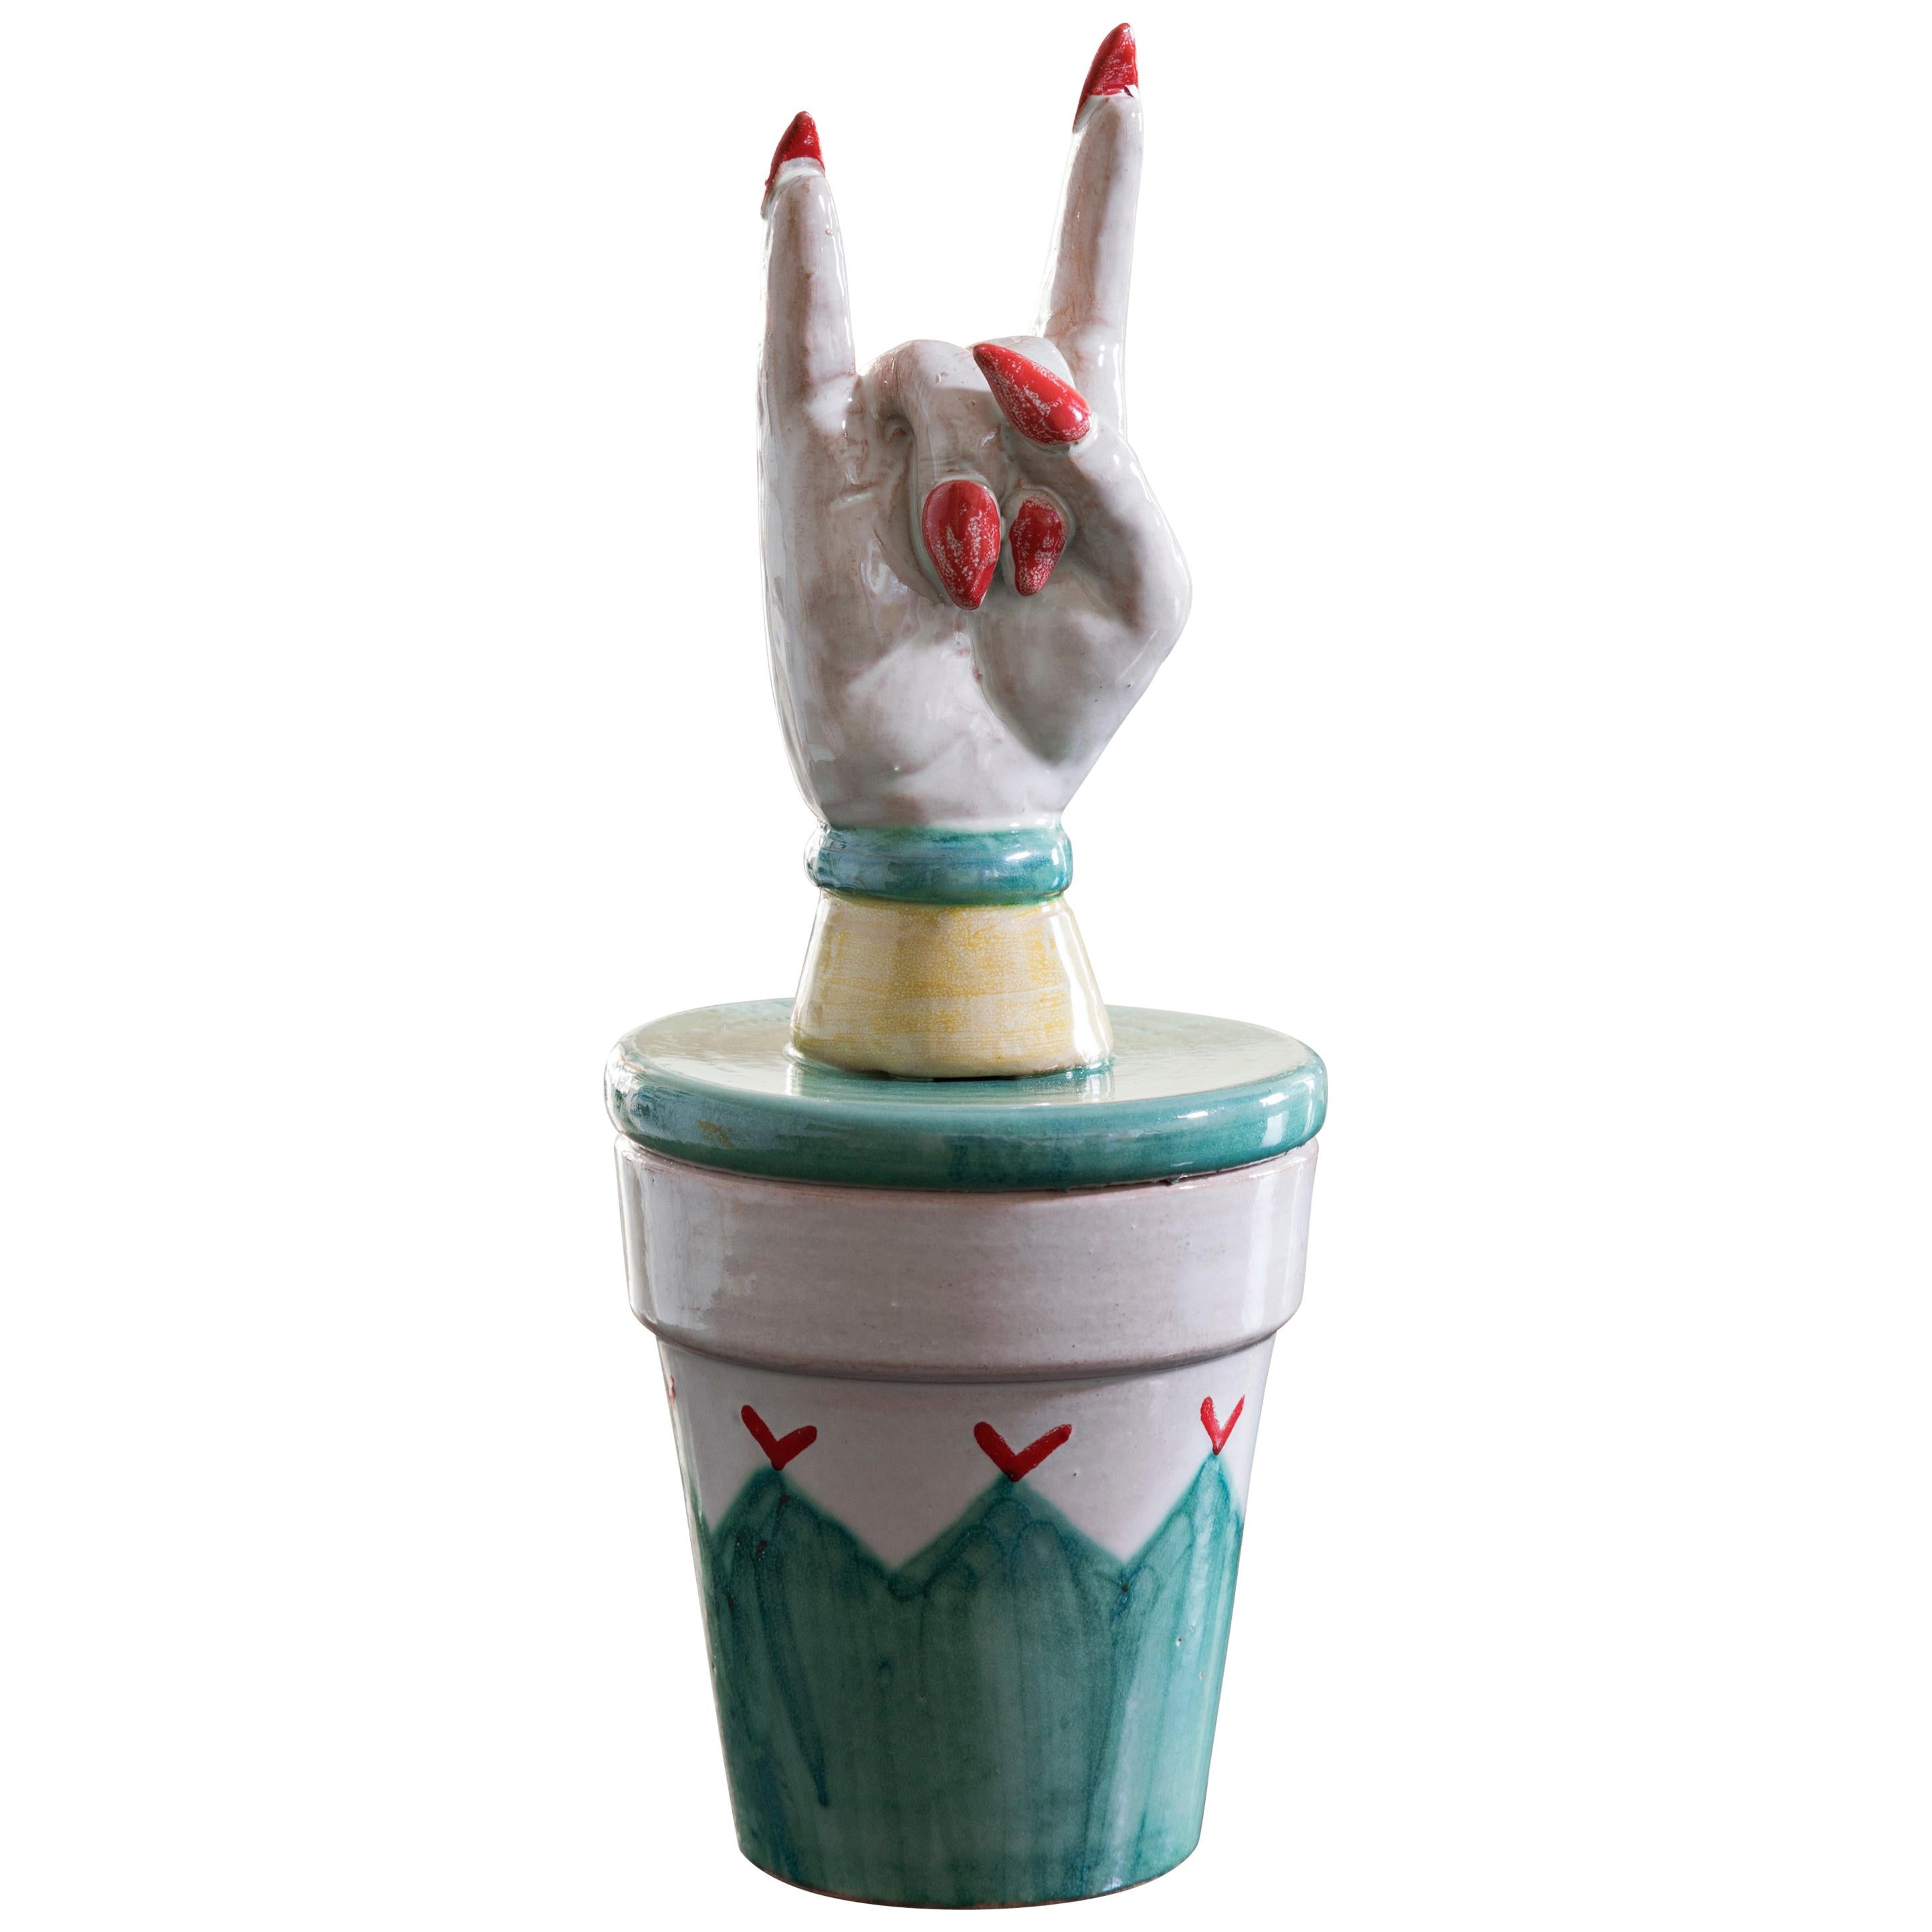 Contemporary Ceramic Vasetto Scaramantico Superstitious Little Jar